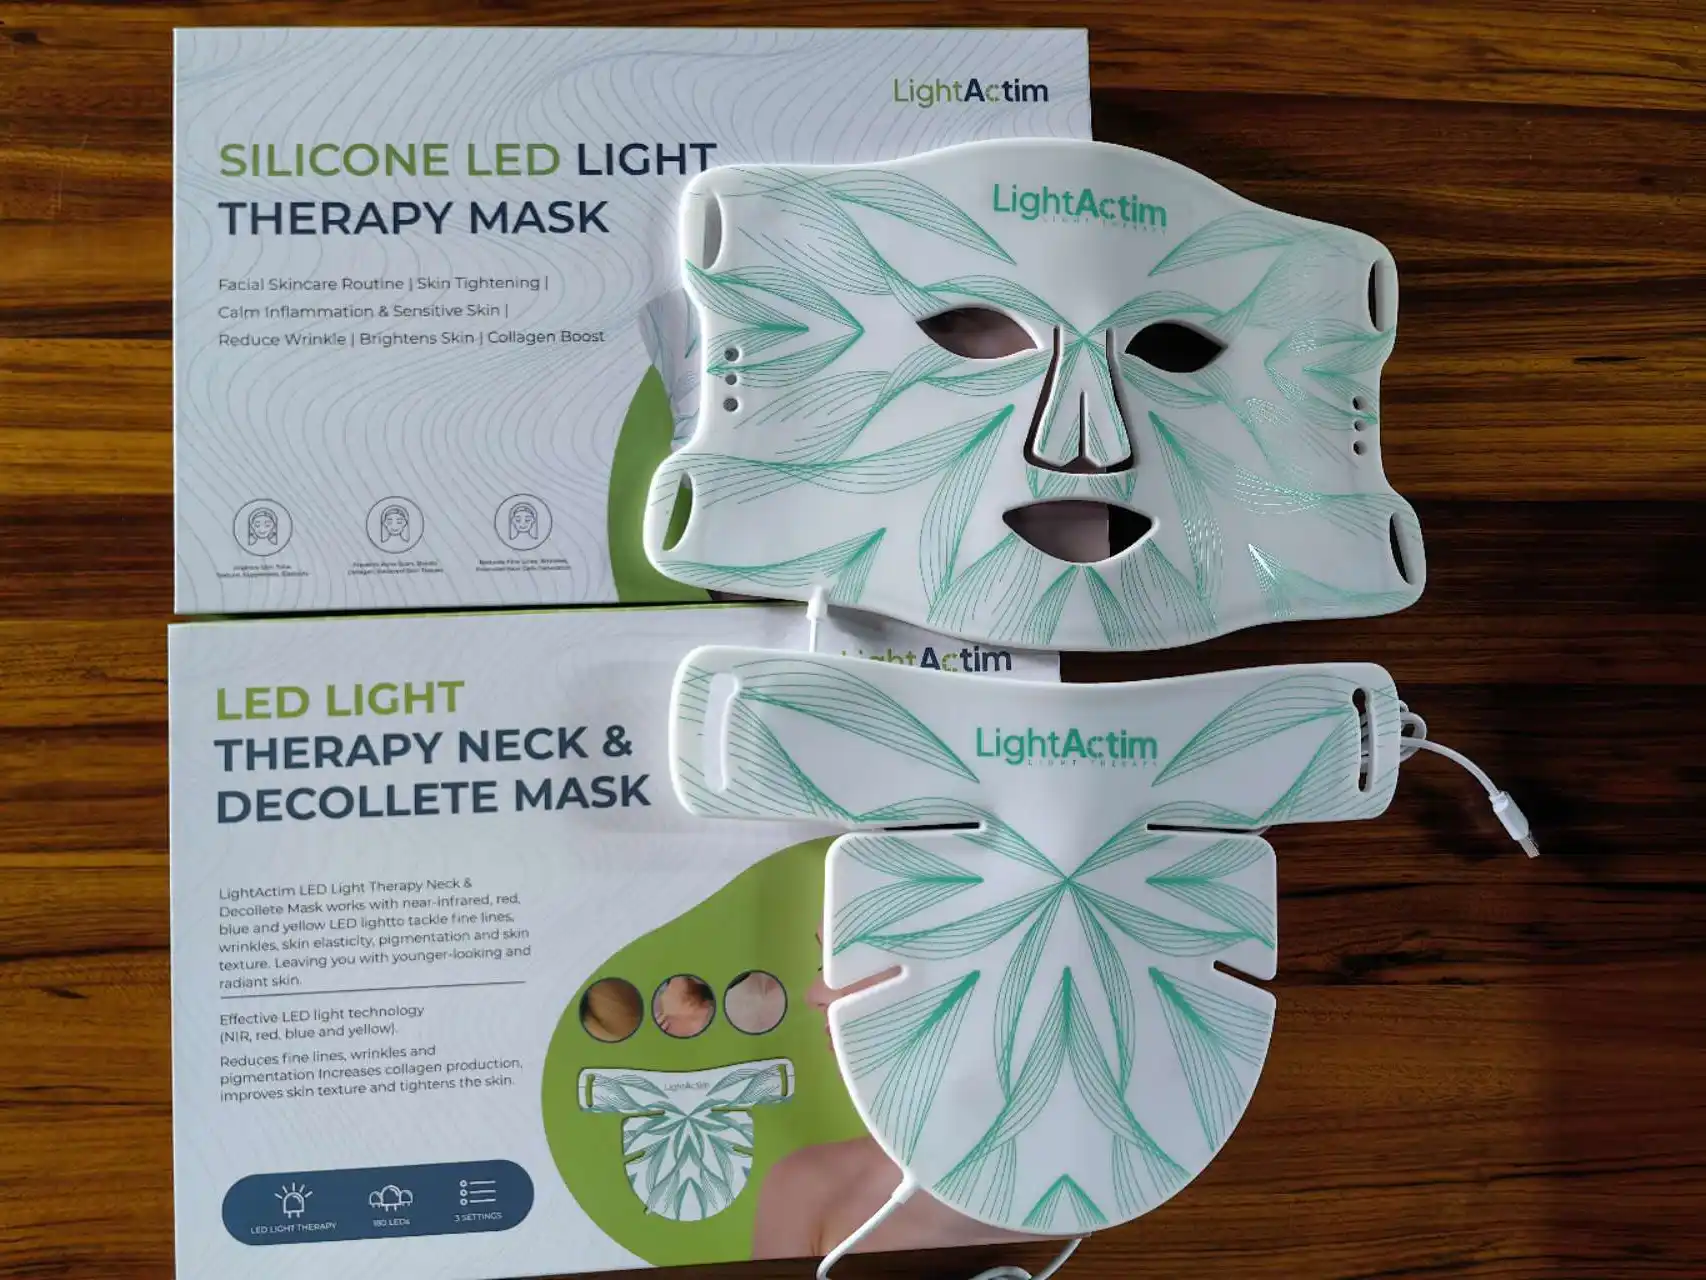 beliebte Schönheitshals-Handpflege Currentbody Korea 640 nm Wellenlänge Anti-Falten rotlicht Therapie-Maske Silikon flexible Gesichtsmaske